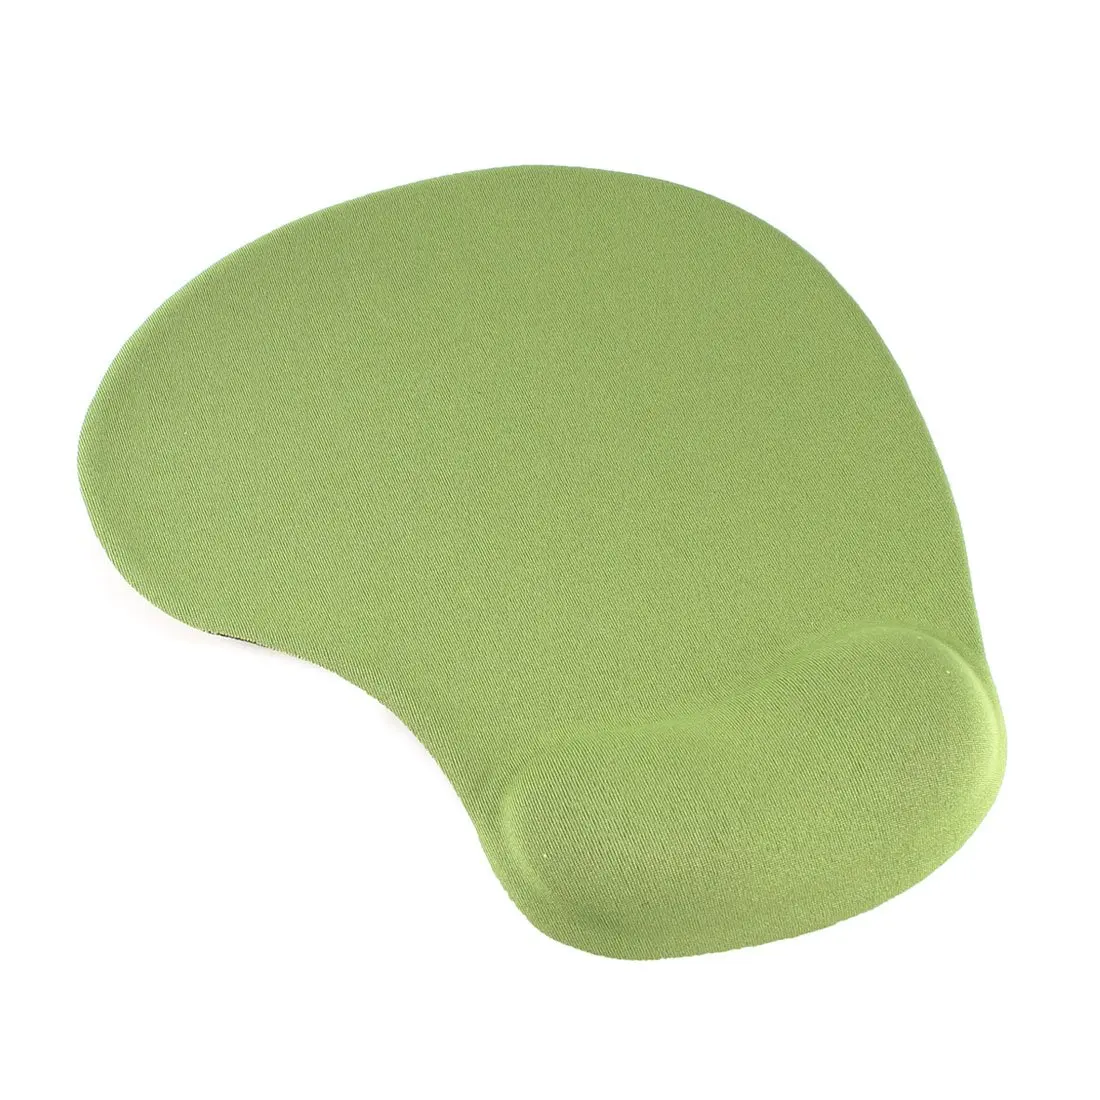 Трава зеленая мягкая браслет на запястье гелевая поддержка коврик для мыши Коврик для рабочего стола